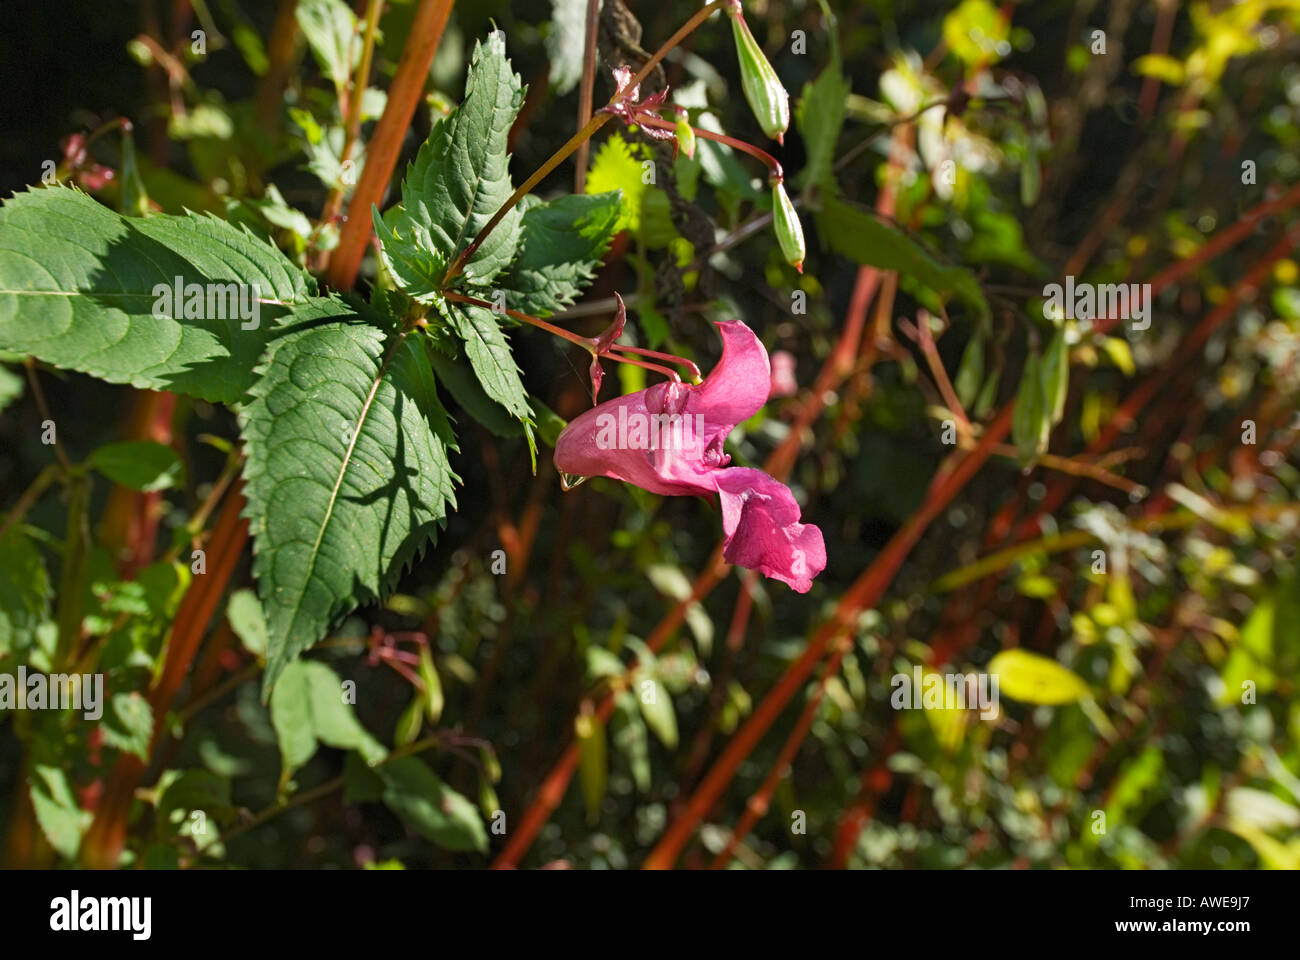 Impatiens glandulifera Emscherorchidée Balsaminaceae, fleur indienne Banque D'Images